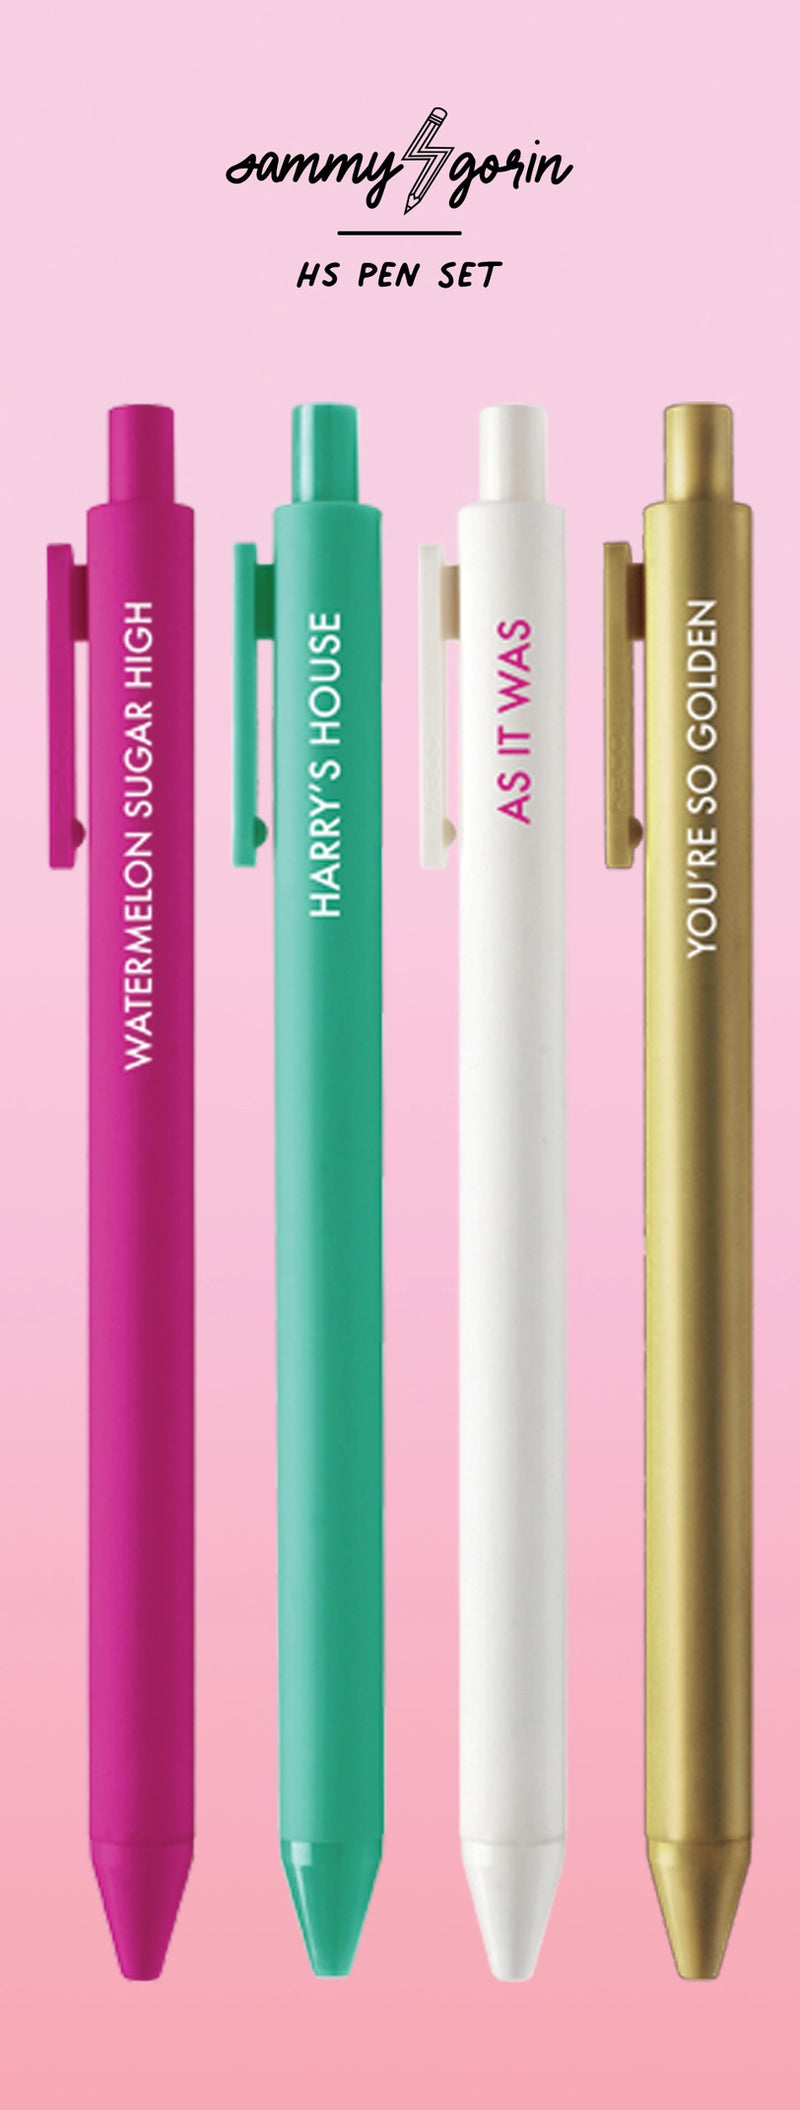 Gel Pen Set of 4 - Harry Styles Themed